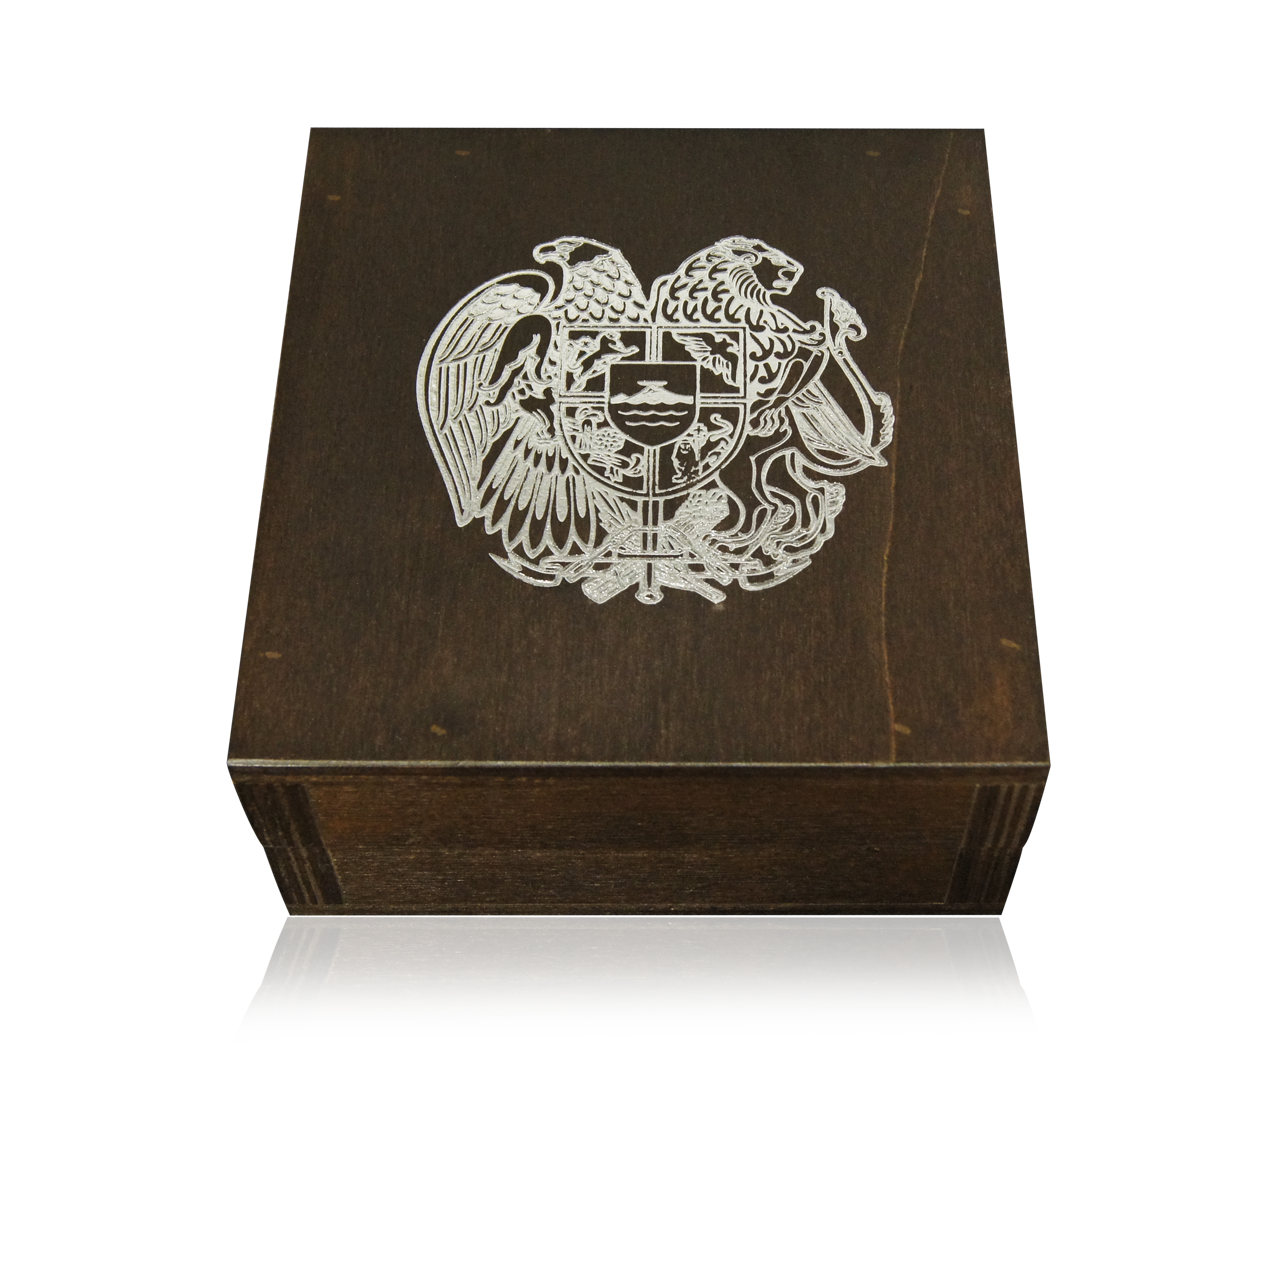 Box for 500 Noahs Ark 1/4 oz silver coins